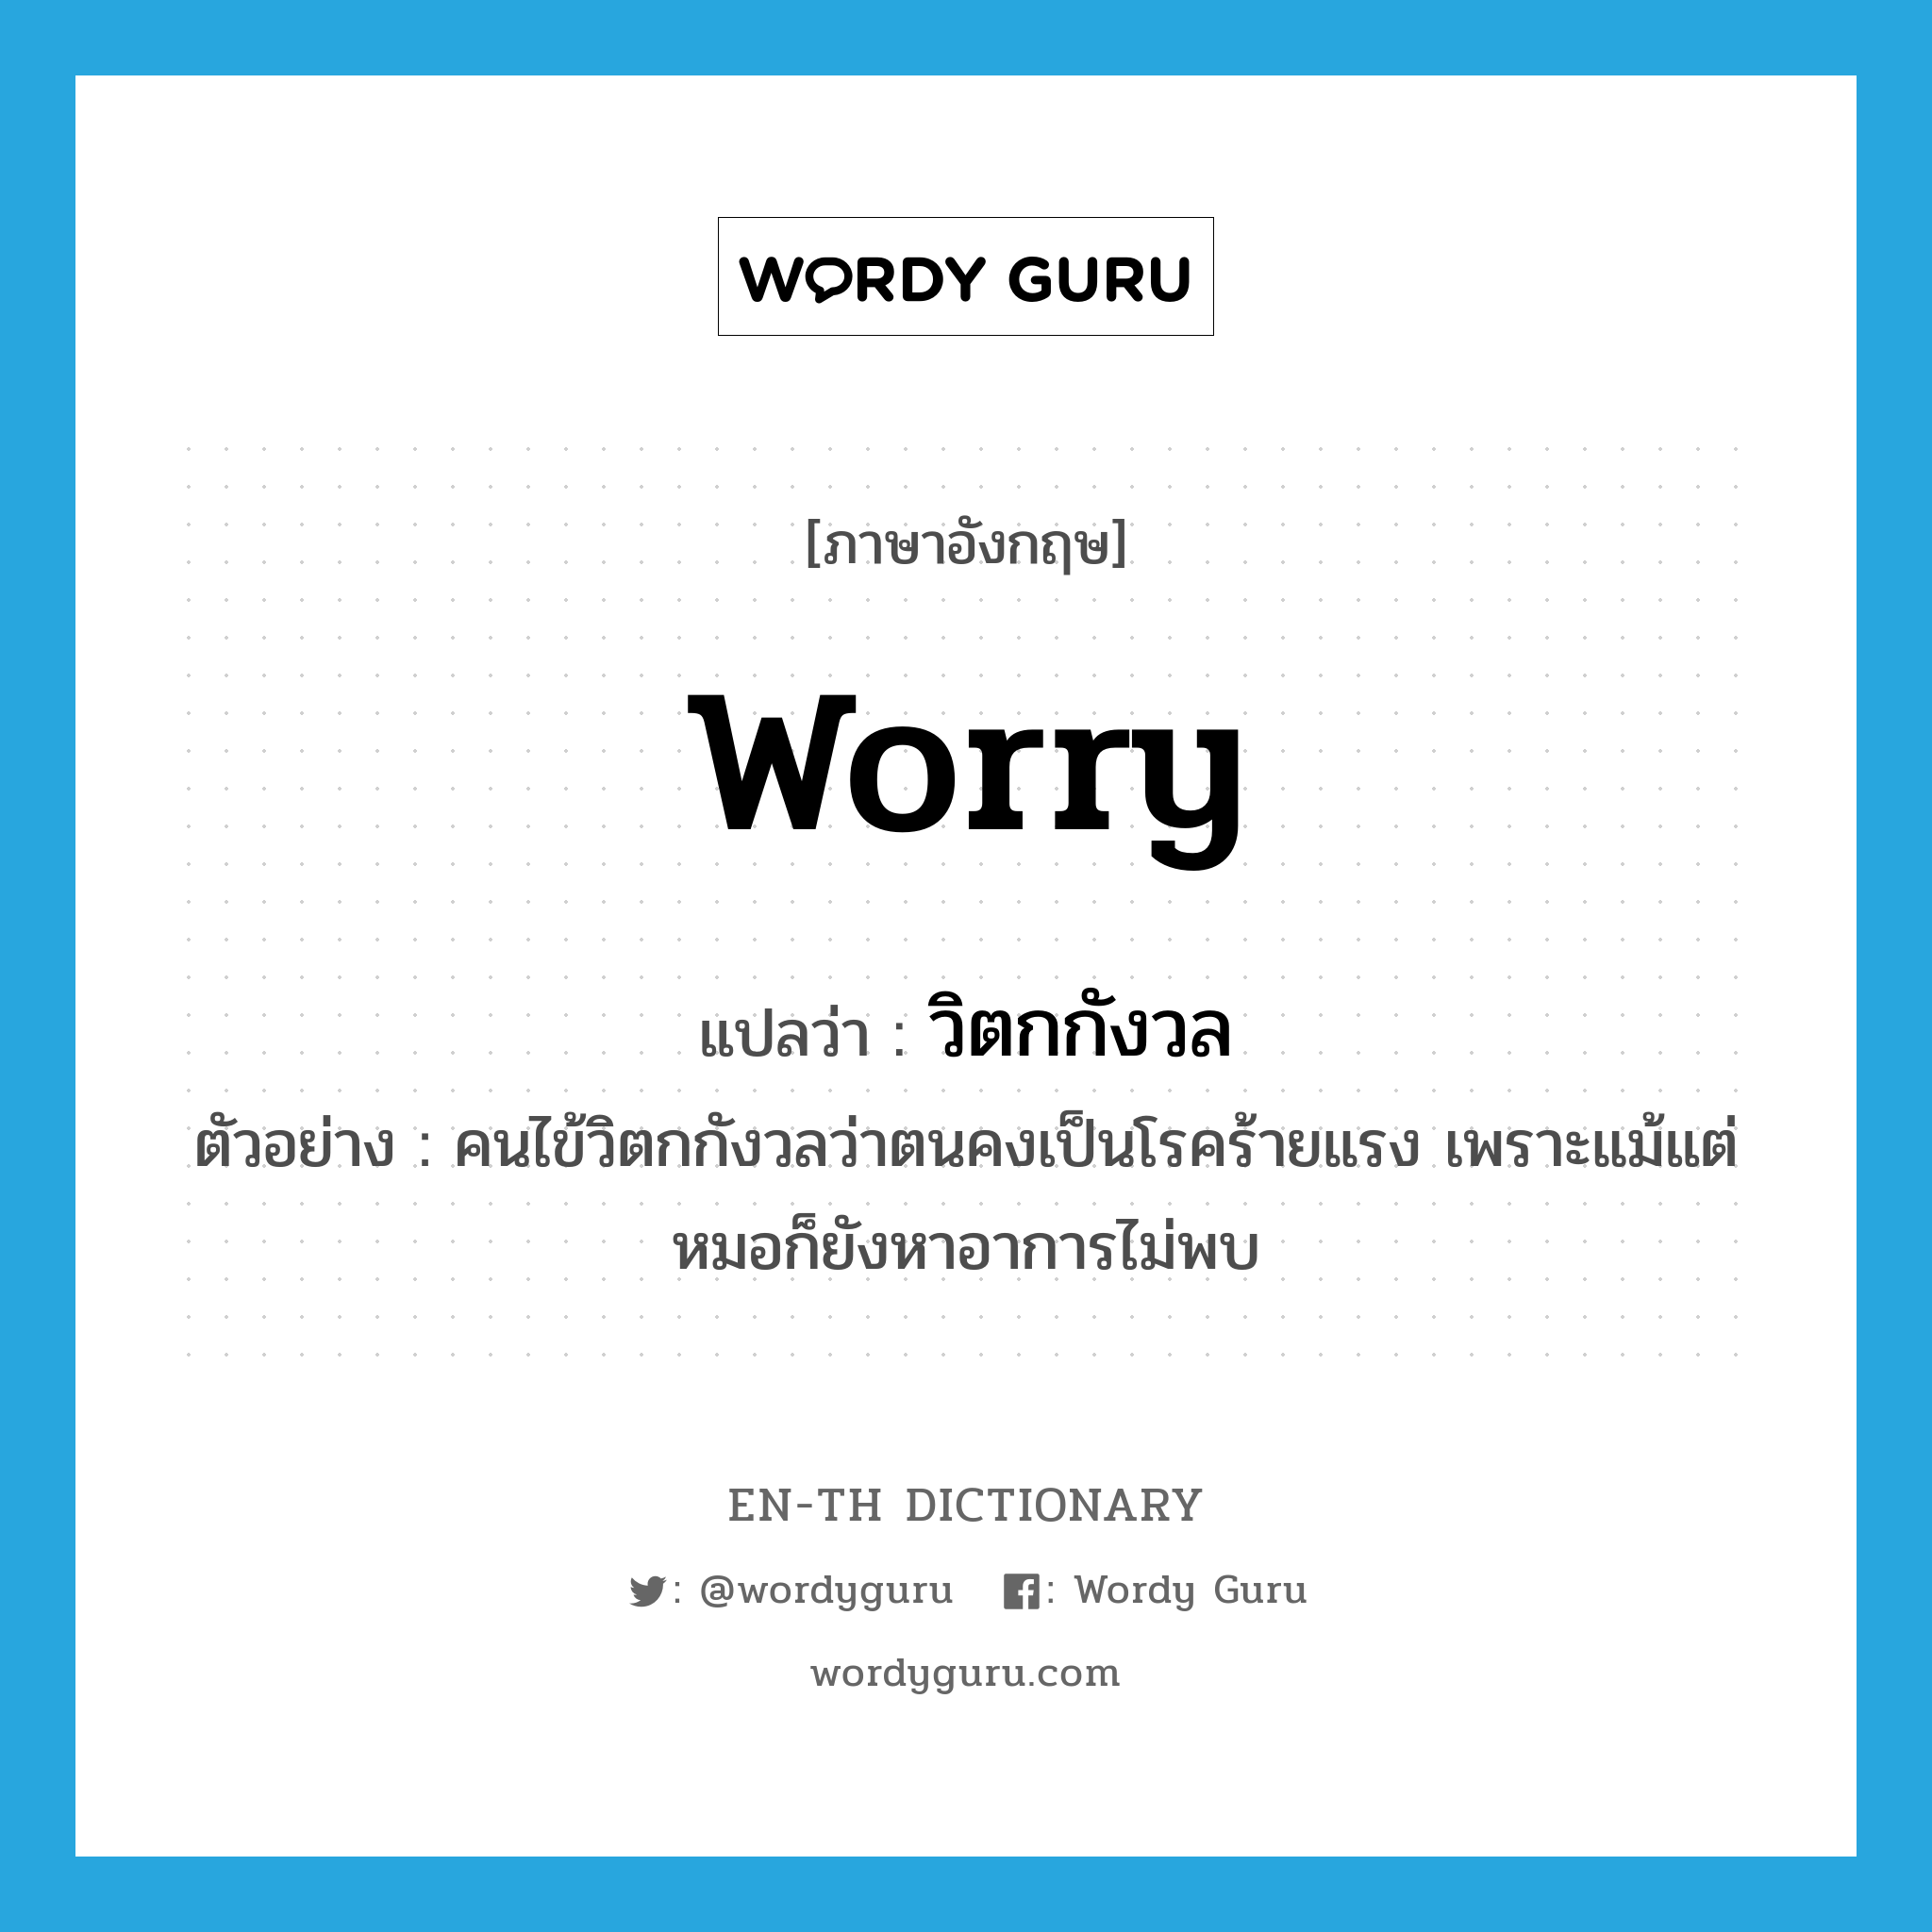 วิตกกังวล ภาษาอังกฤษ?, คำศัพท์ภาษาอังกฤษ วิตกกังวล แปลว่า worry ประเภท V ตัวอย่าง คนไข้วิตกกังวลว่าตนคงเป็นโรคร้ายแรง เพราะแม้แต่หมอก็ยังหาอาการไม่พบ หมวด V